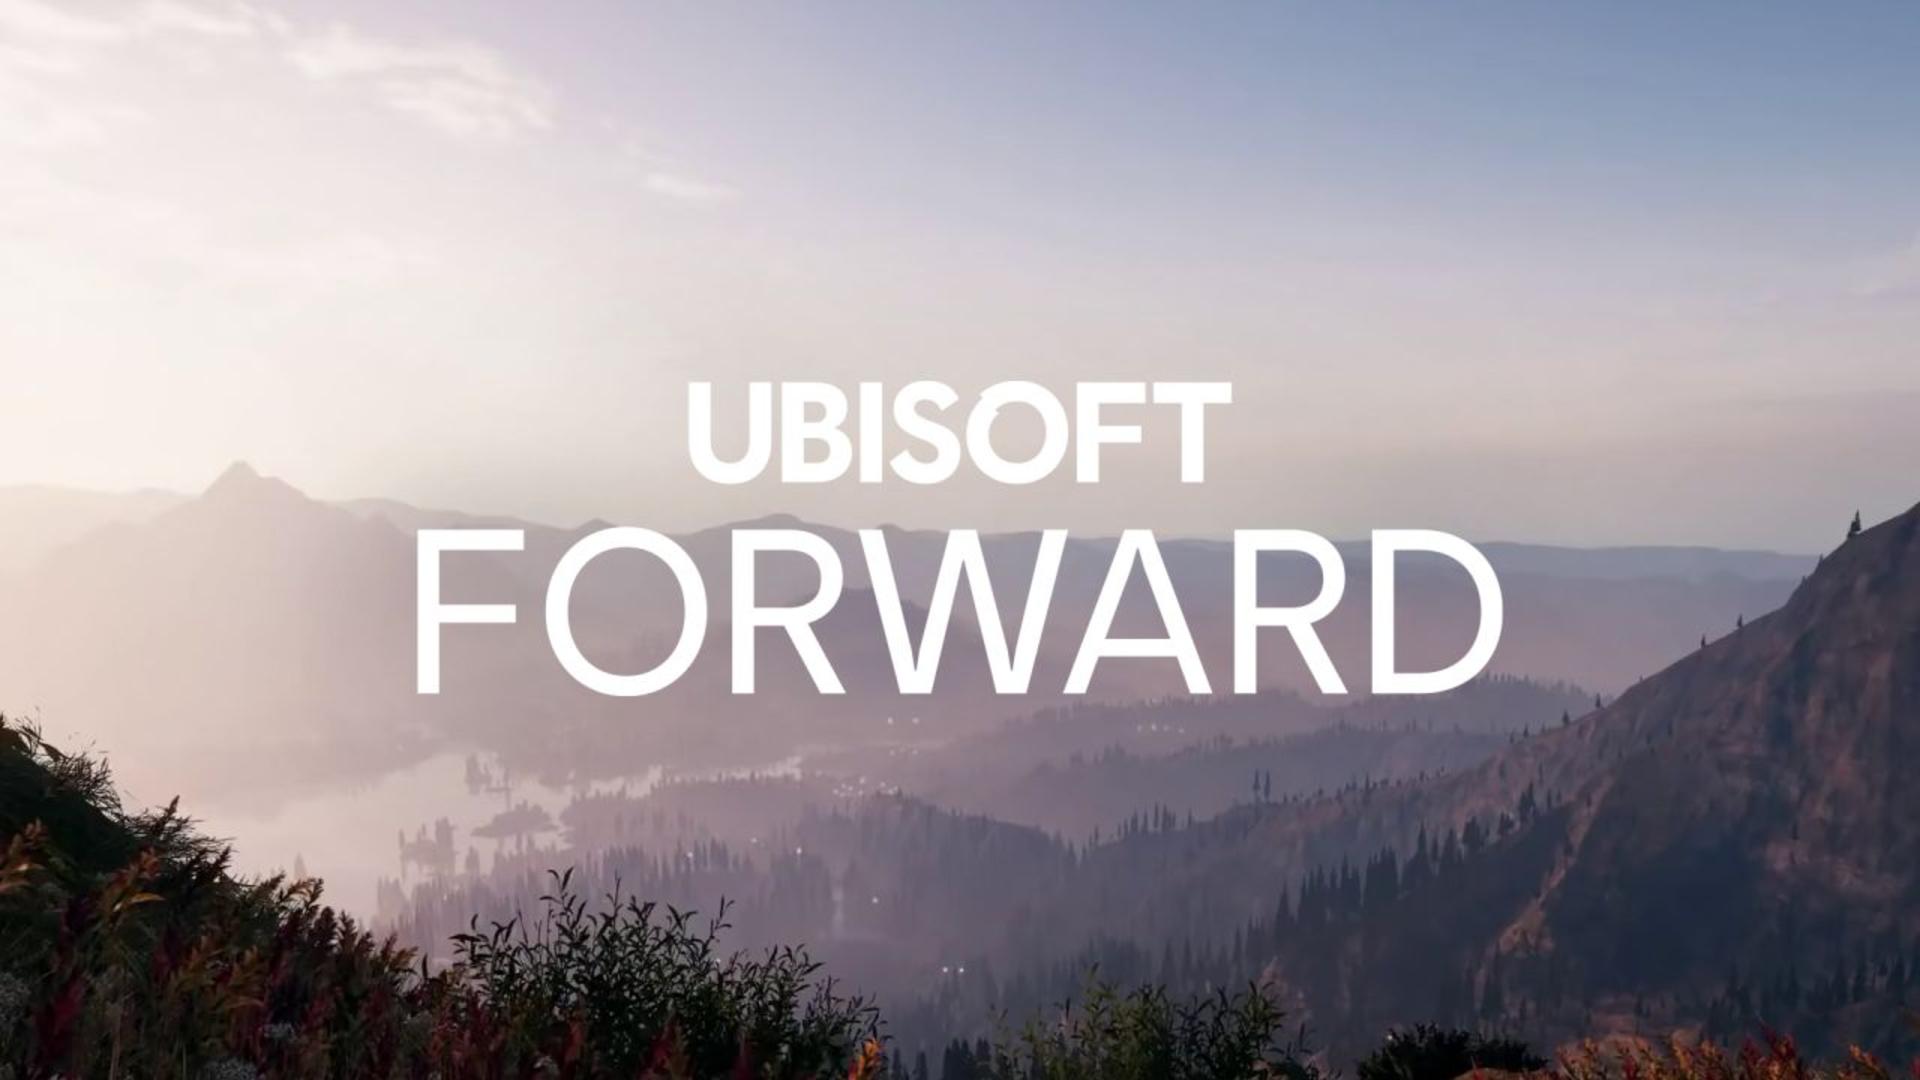 Ubisoft forward será o evento online em julho | f19f21a1 ubisoft forward | slot machine | ubisoft forward slot machine